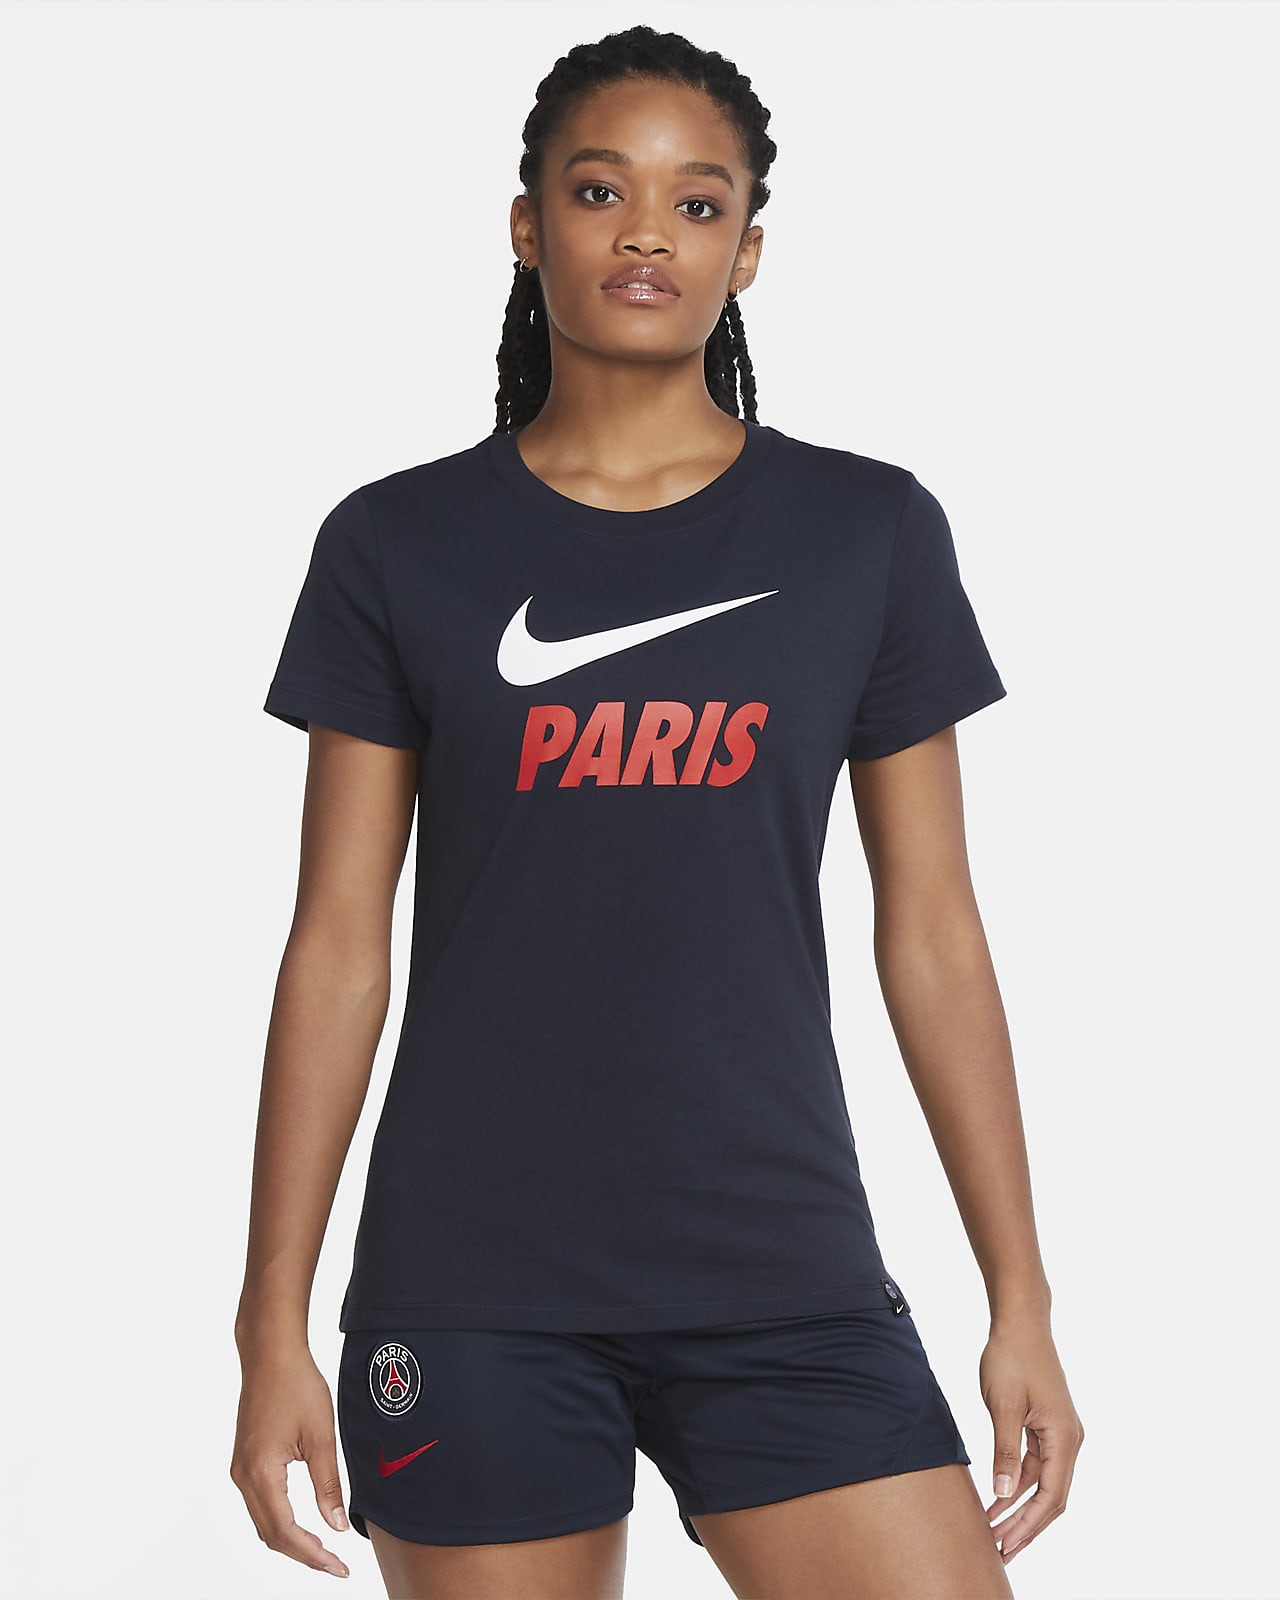 Paris Saint Germain T Shirt - Paris Saint Germain Training T-Shirt Dry ...